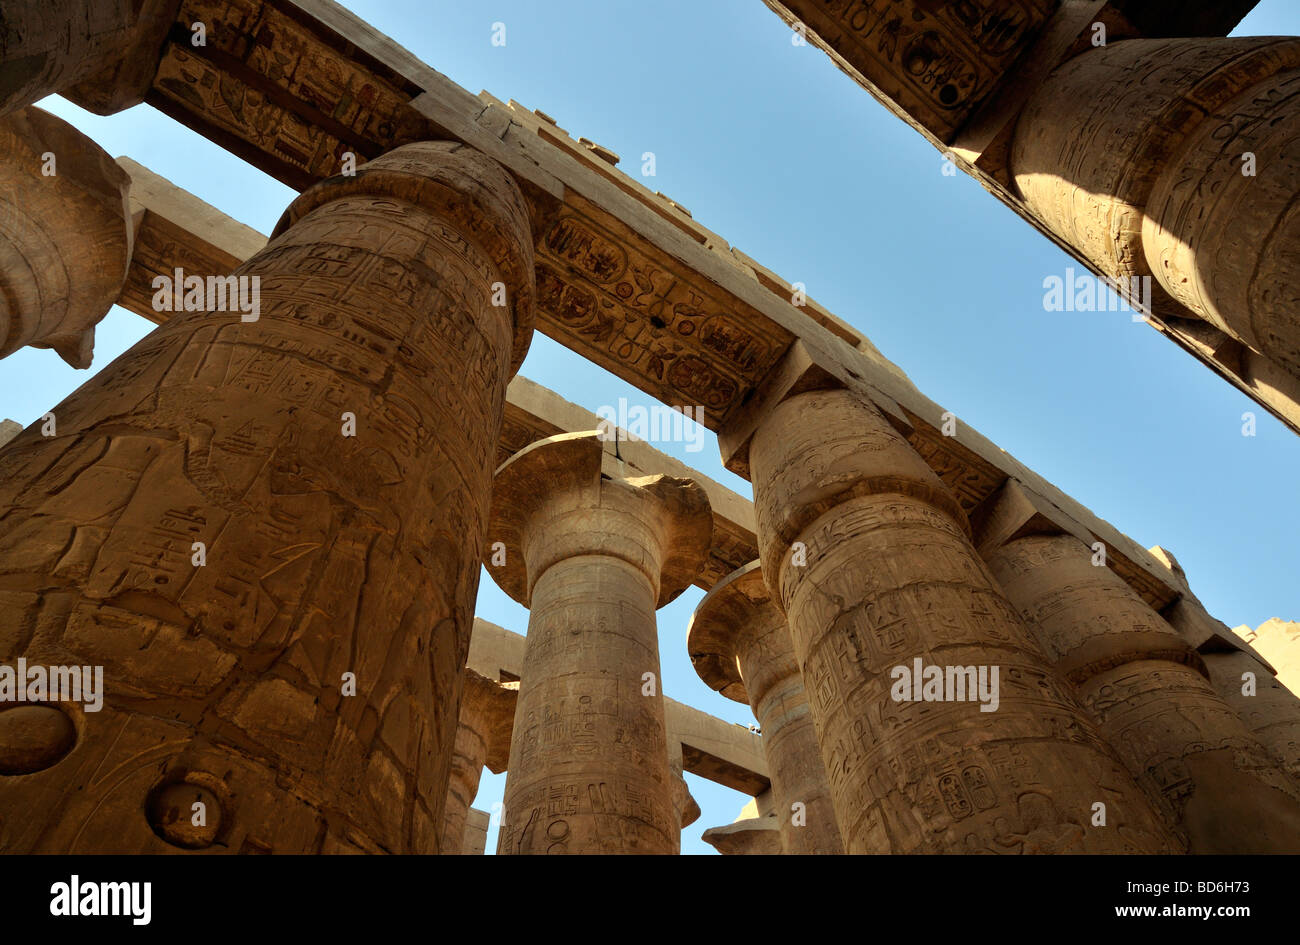 Papyrus de colonnes colossales salle hypostyle Cité parlementaire d'Amon Re complexe du temple de Karnak Louxor Égypte près de Banque D'Images